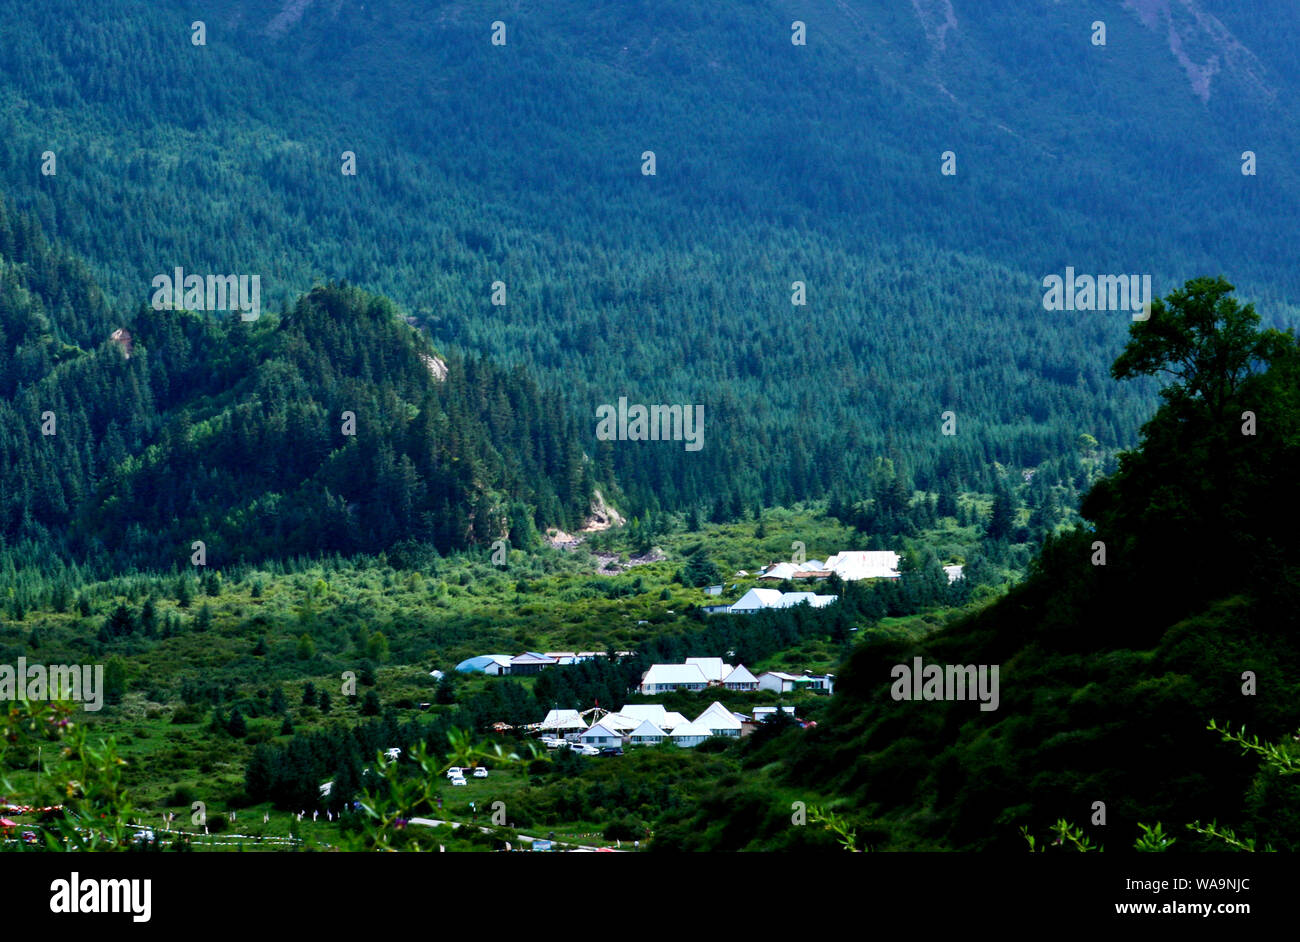 Vista dalla collina adiacente delle frazioni scattering tra Qilian montagne e foreste, Sunan Yugur contea autonoma, Zhangye city, a nord-ovest della Cina di Gansu Foto Stock